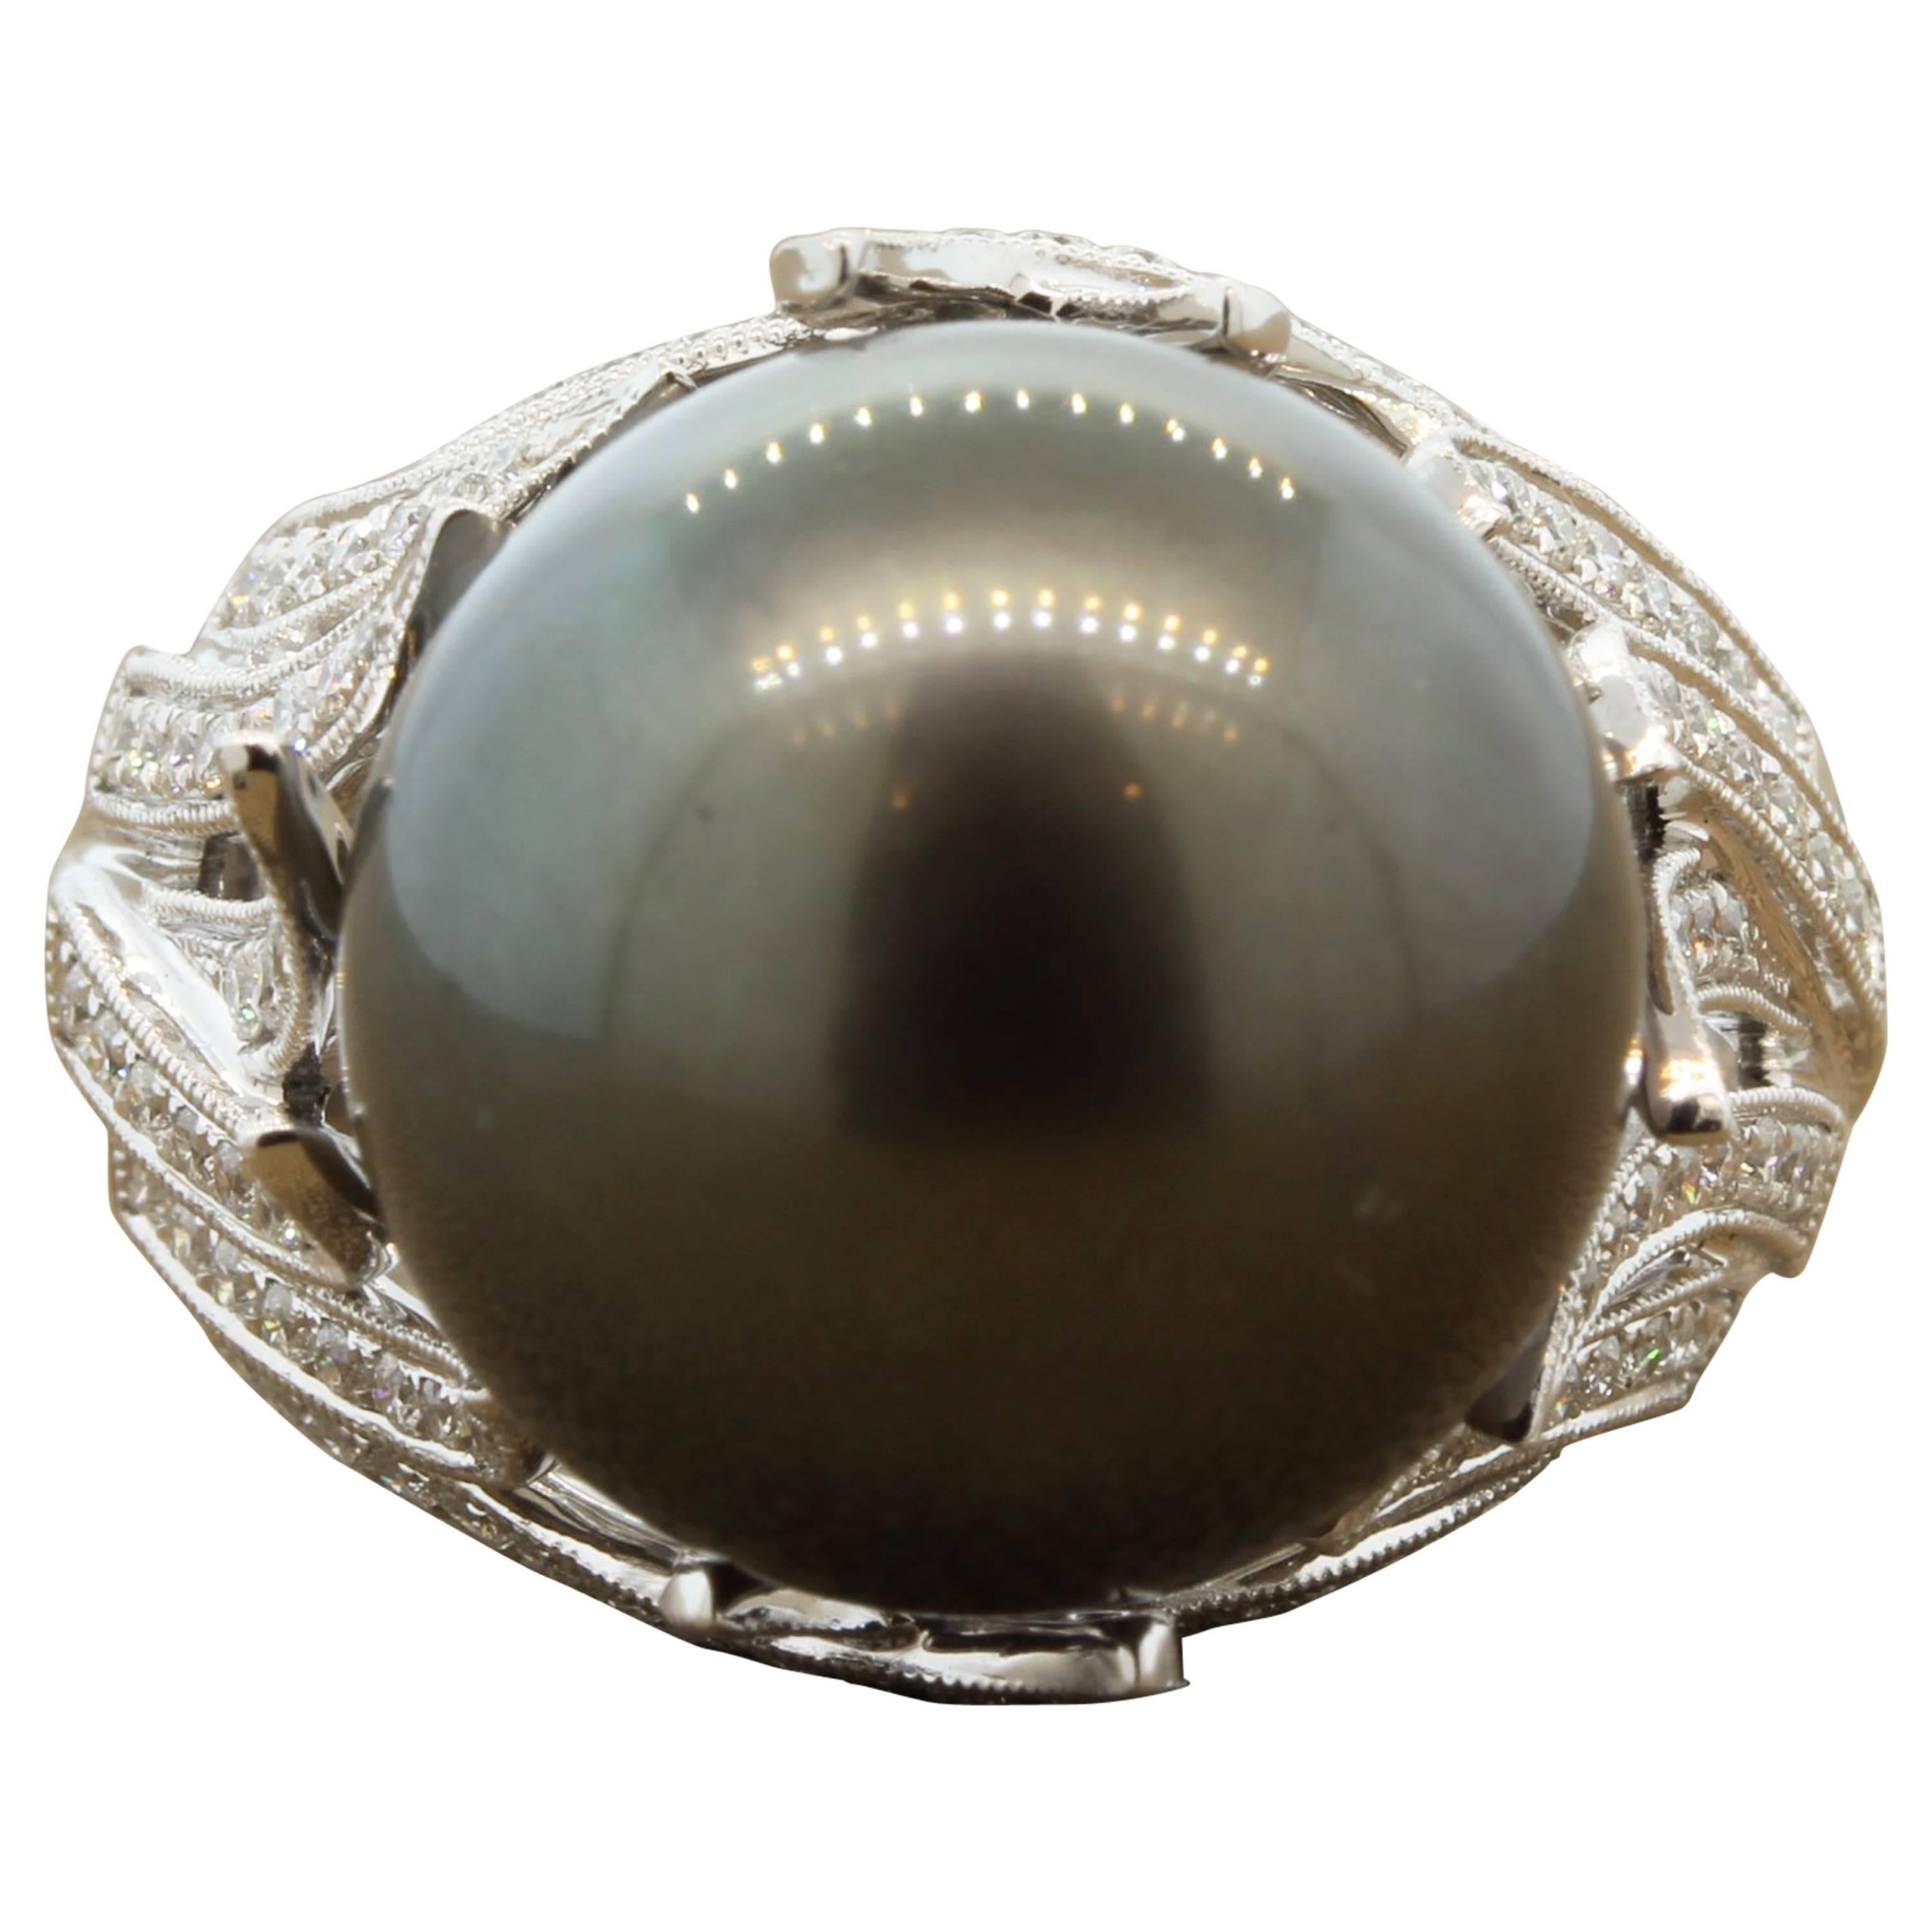 Ein moderner Goldring mit einer 15,5 mm großen Tahiti-Perle, die so groß ist wie das Kommende. Es sind 0,66 Karat Diamanten mit rundem Schliff in 18 Karat Weißgold gefasst. Jede Frau braucht einen klassischen Perlenschmuck.
Größe 7 
